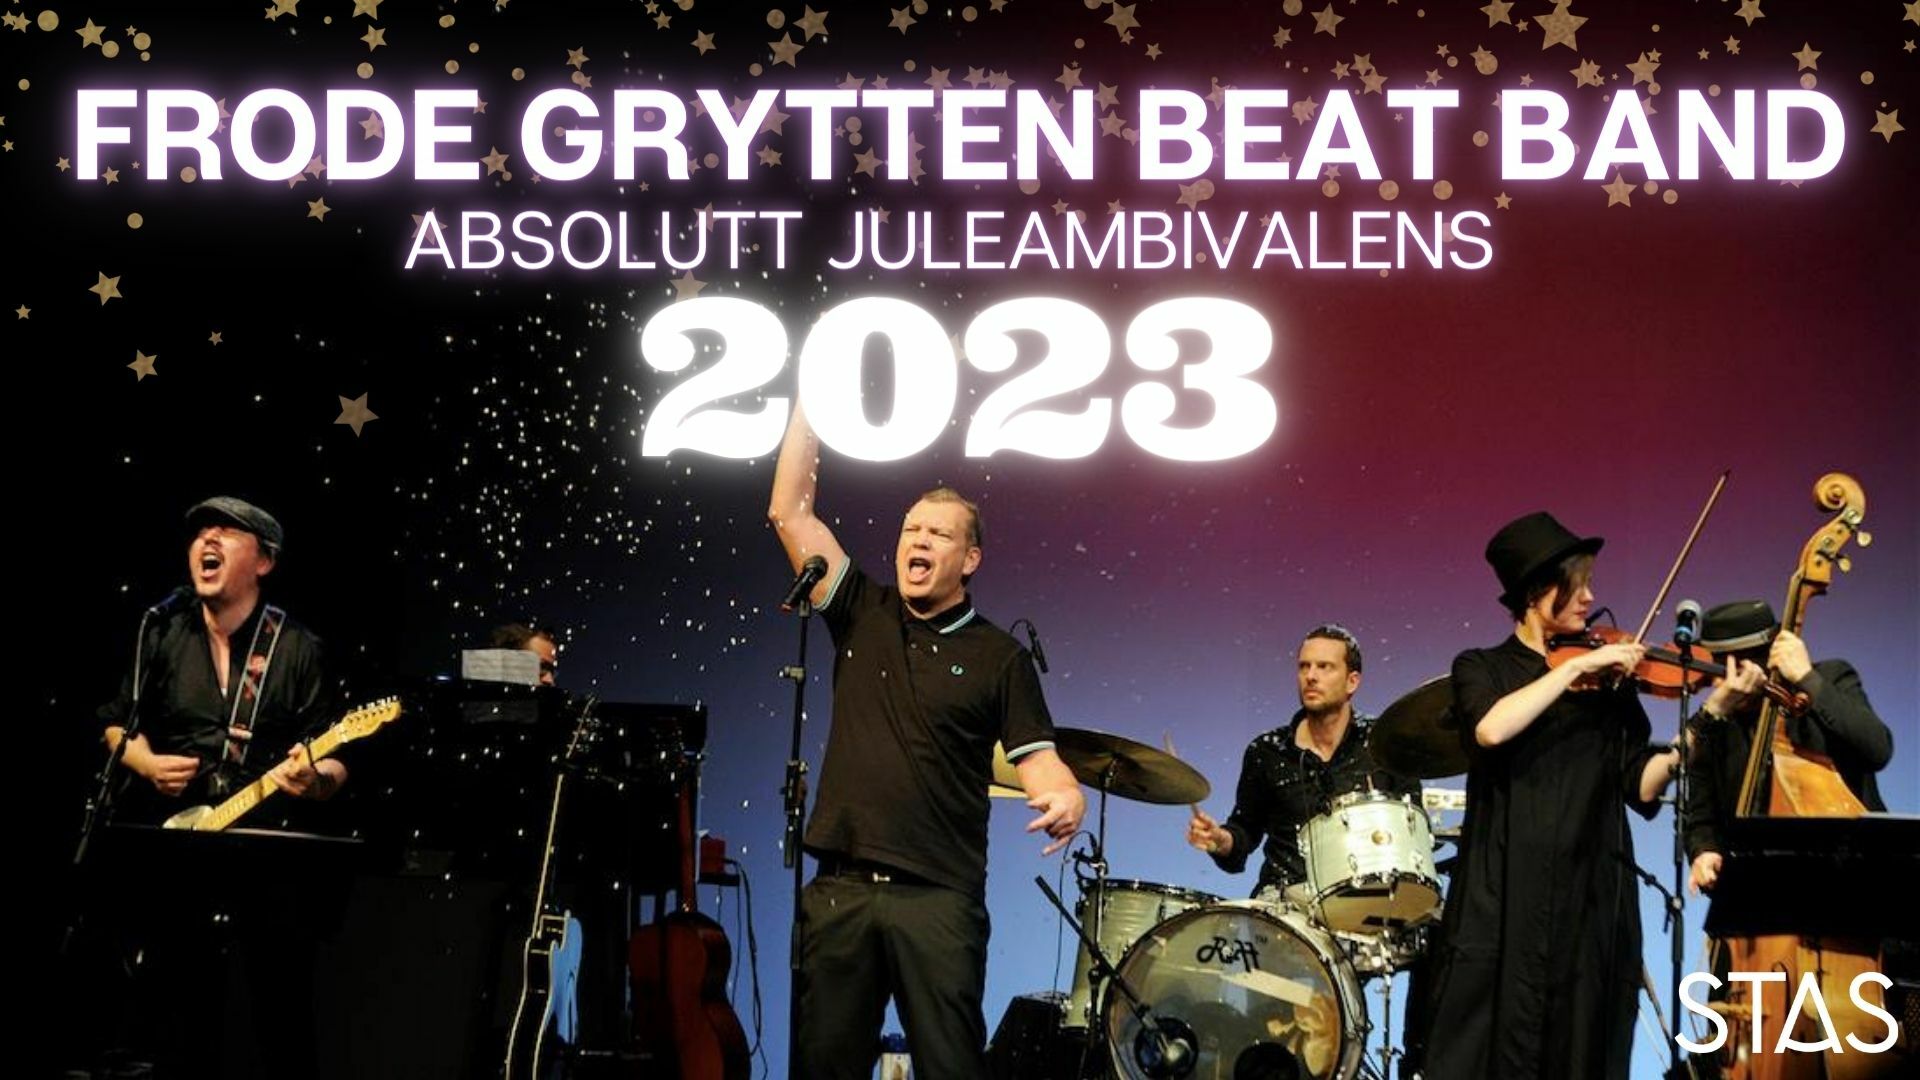 Frode Grytten Beat Band // Absolutt juleambivalens 2023  - Stas Artist 